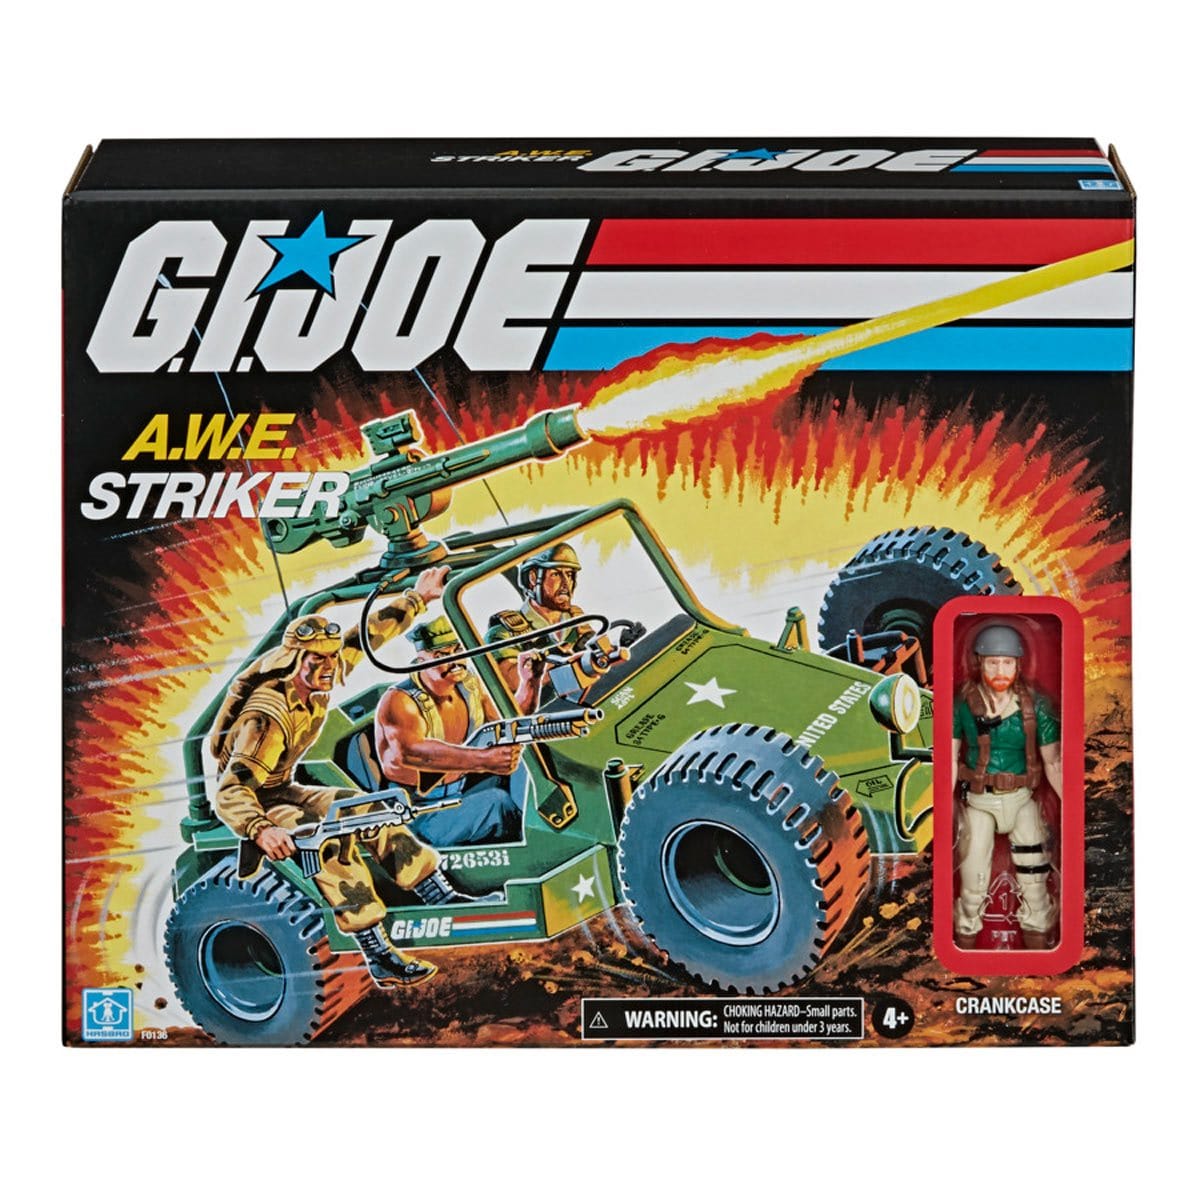 G.I. Joe Retro Collection A.W.E. Striker Pop-O-Loco